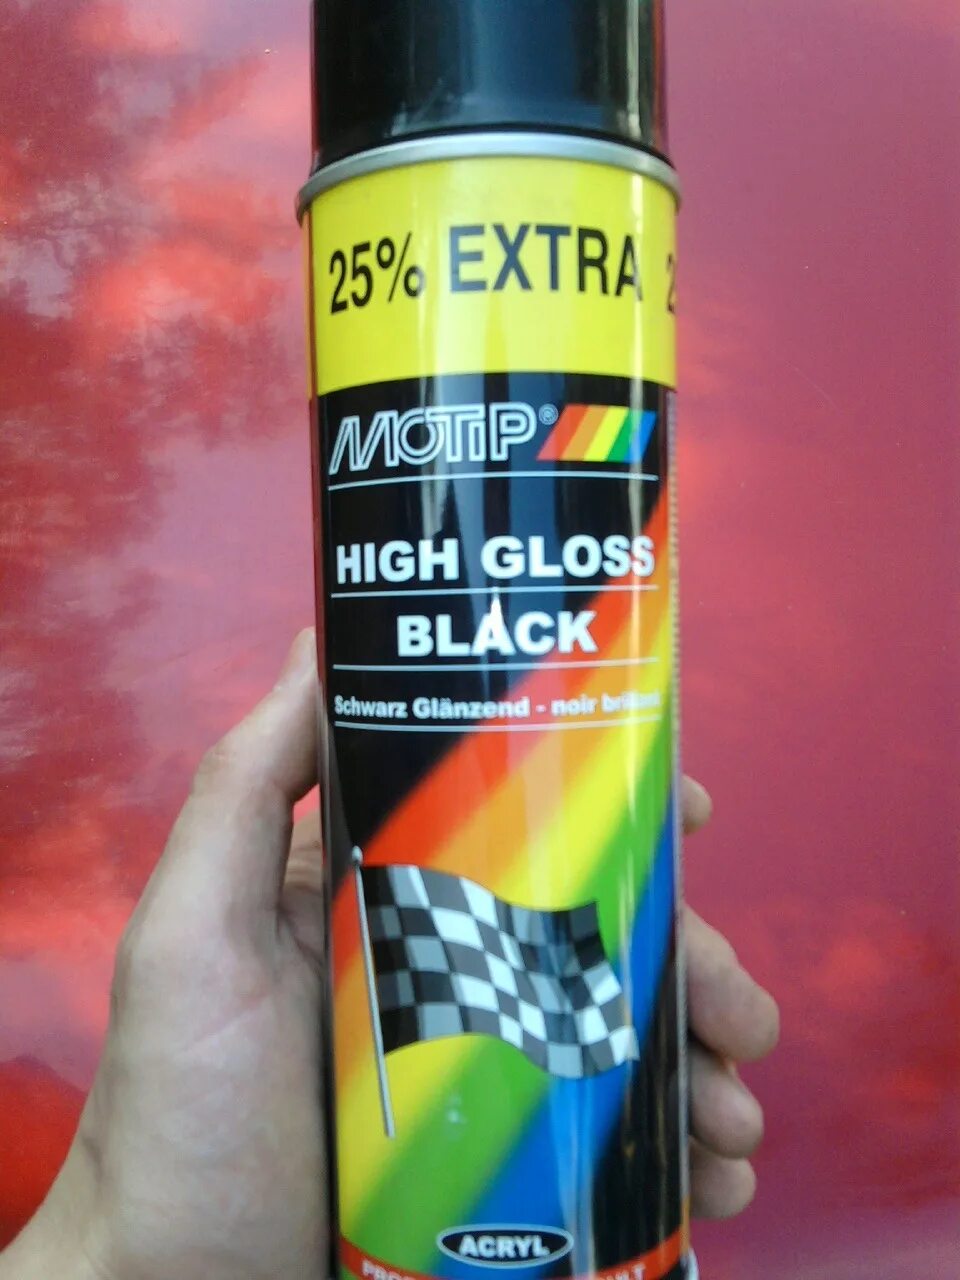 Краска черная артикул. Мотип краска полуматовая черная. MOTIP Black Gloss. MOTIP High Gloss Black краска аэрозольная артикул. MOTIP черный глянец.